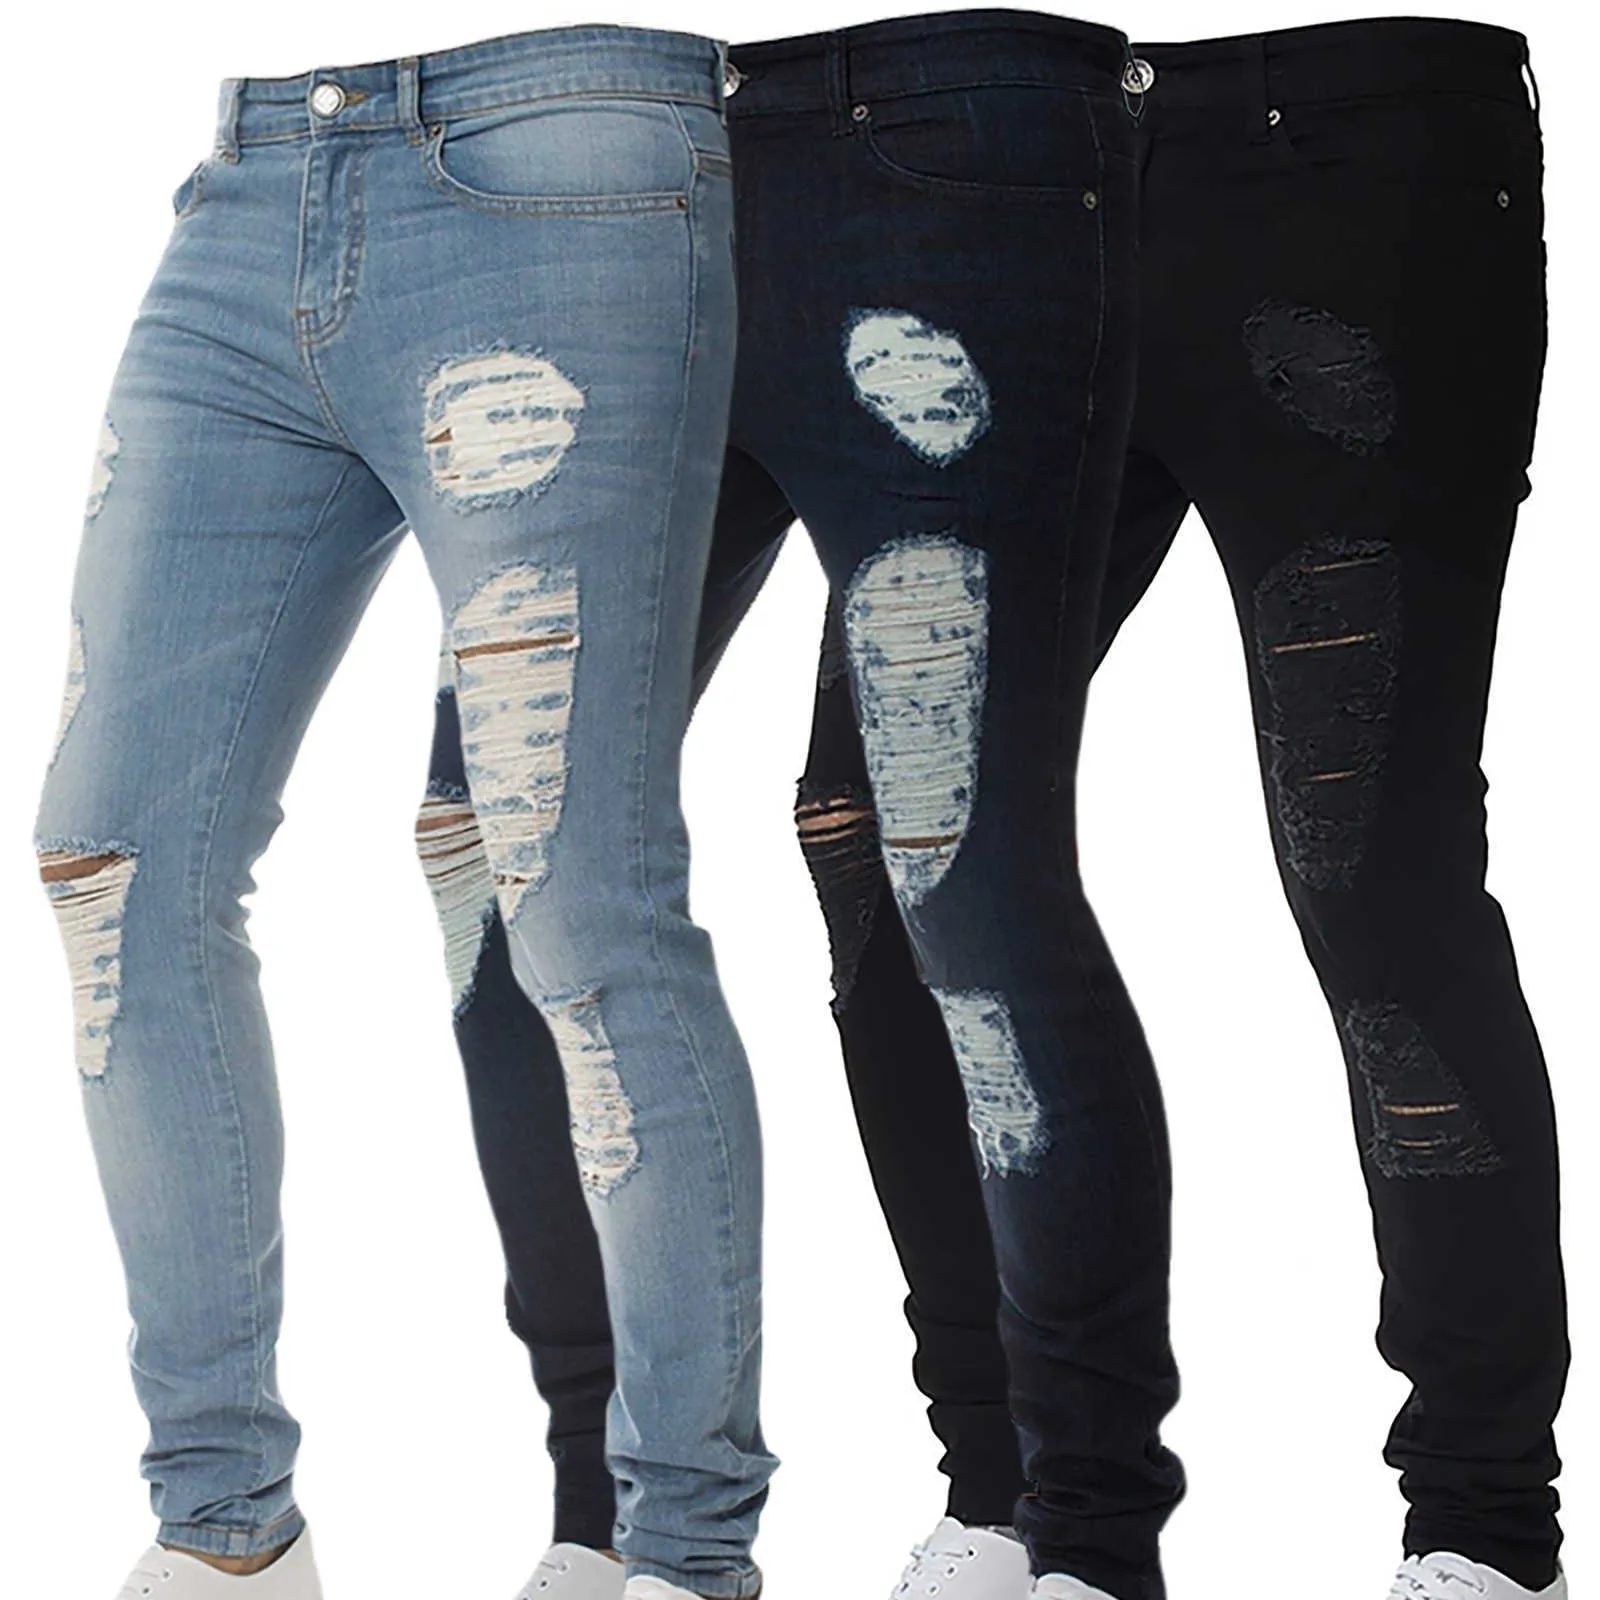 Jeans for Men Denim Pants Solid Color Hip Hop Trousers Long Pants Ripped Plus Size Men Clothing XXXL Skinny Jeans Men X0621